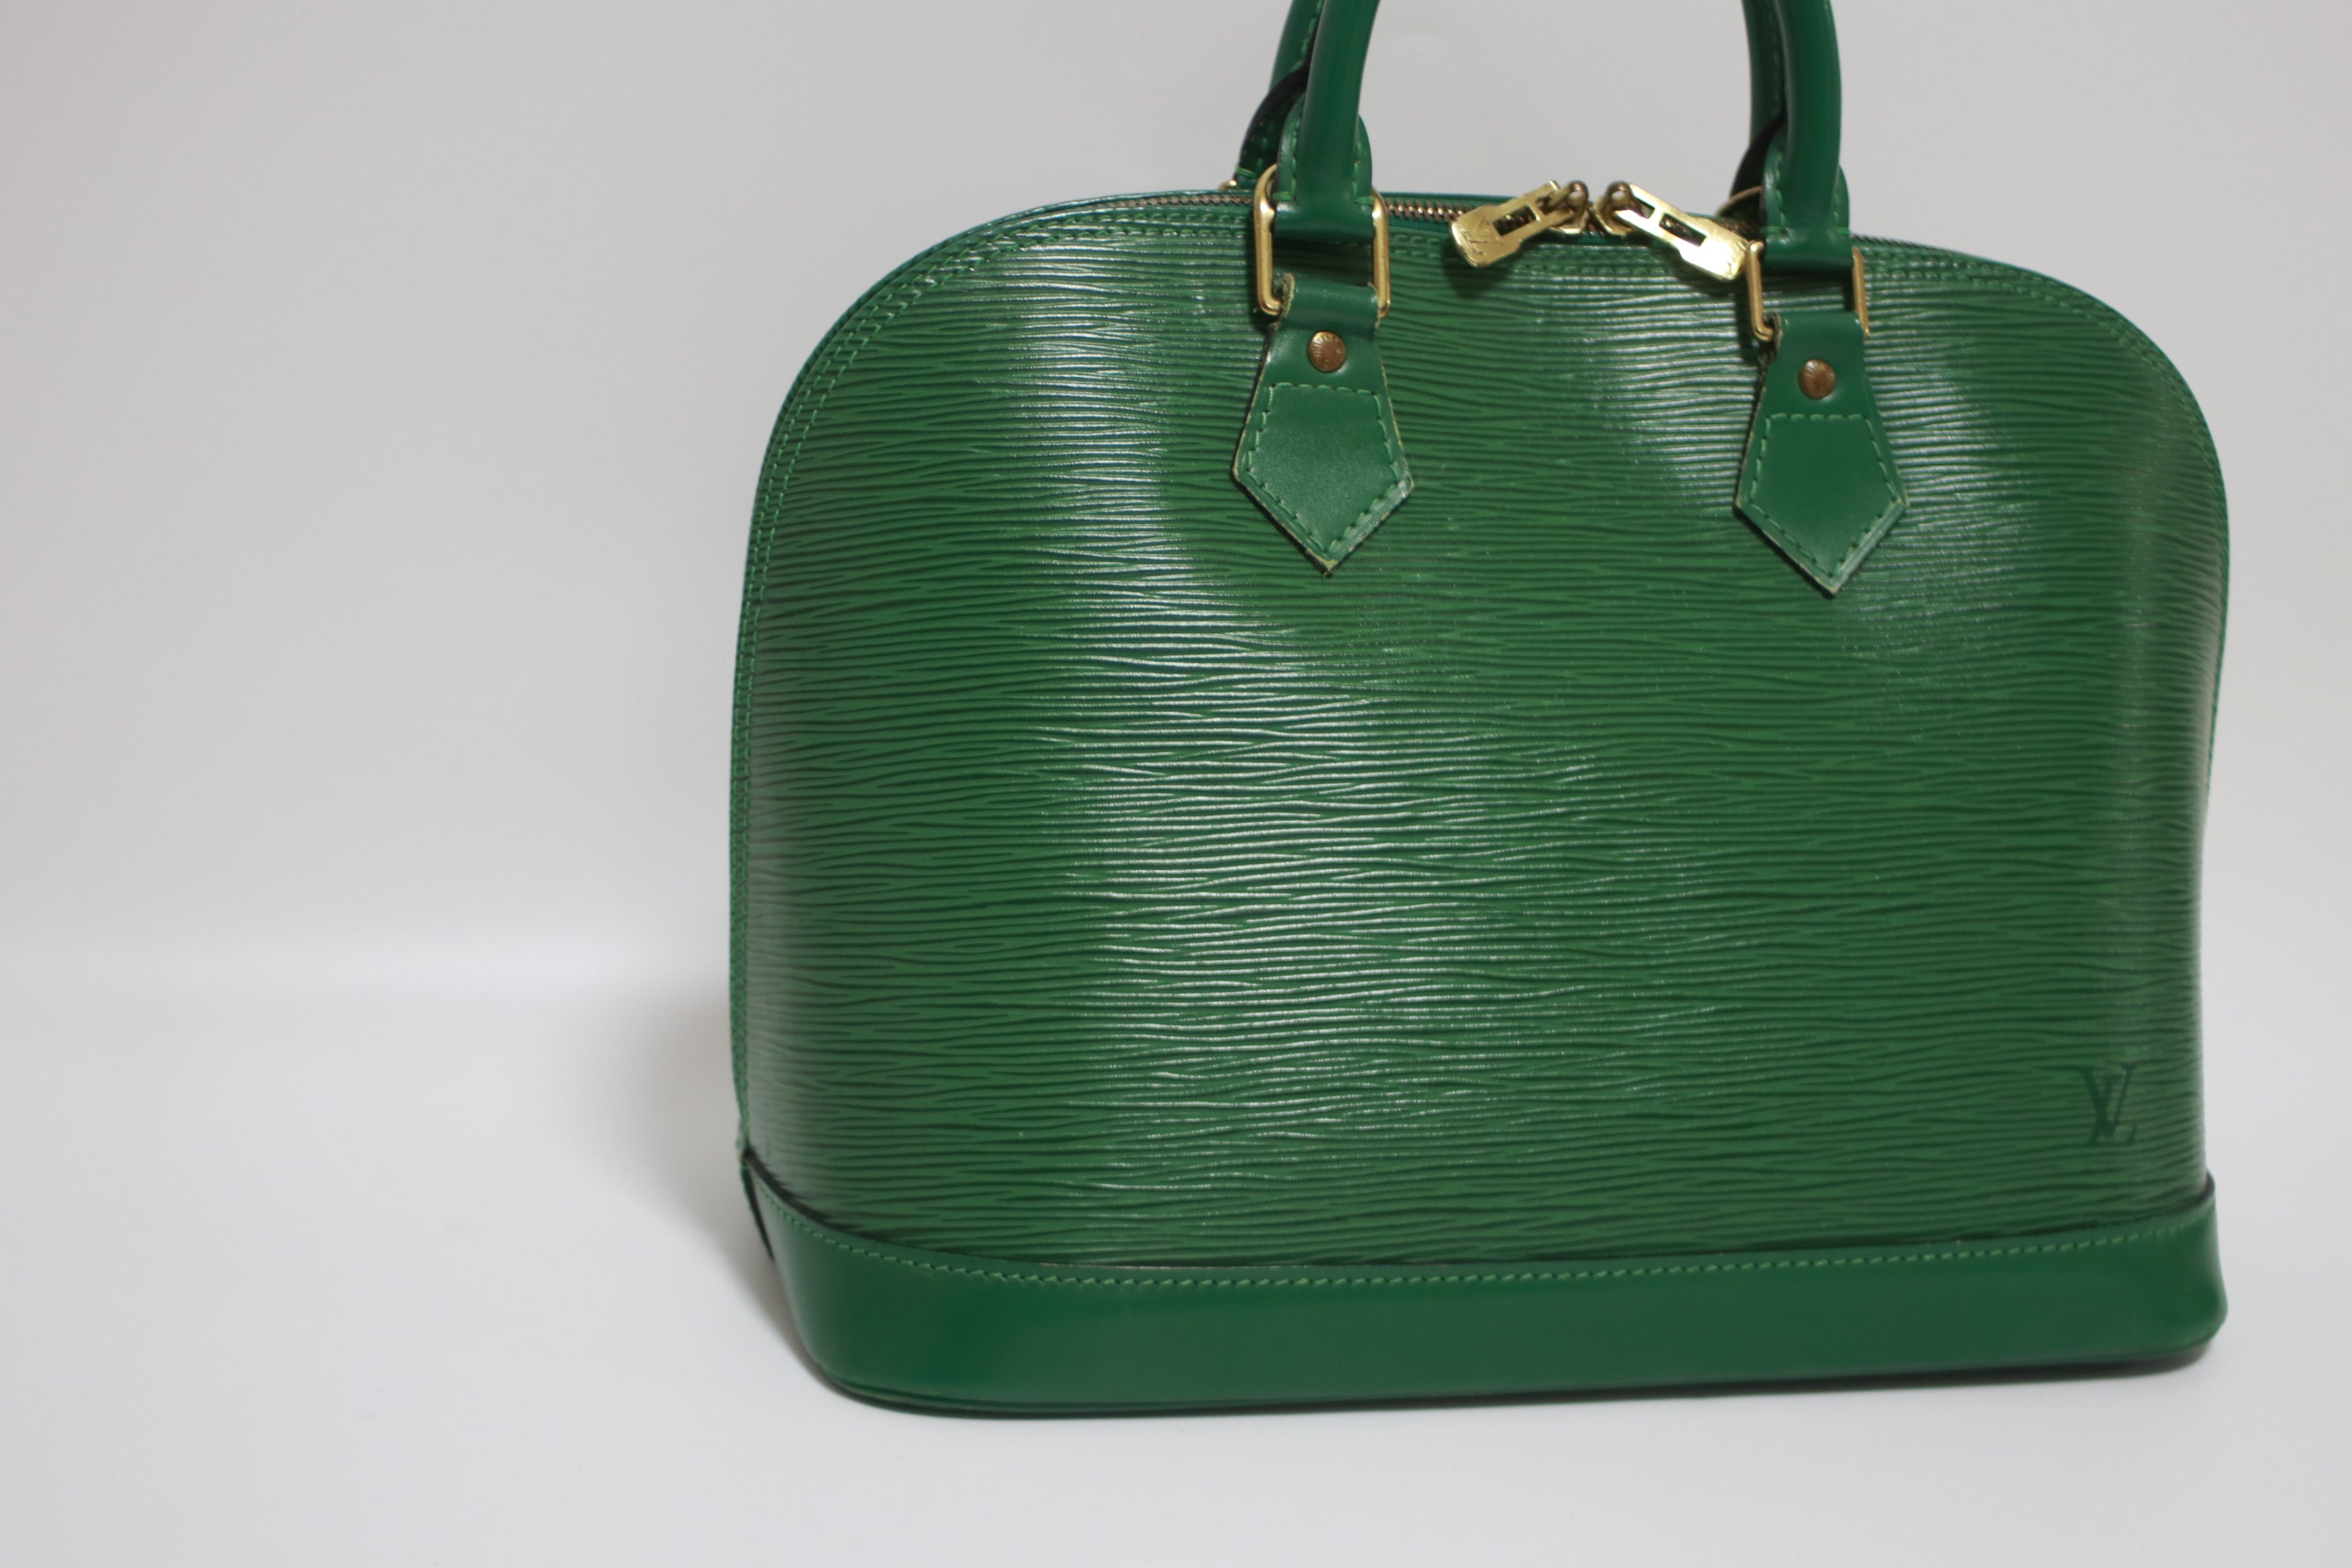 Louis Vuitton Alma PM Epi Leather Green Handbag Used (7451)